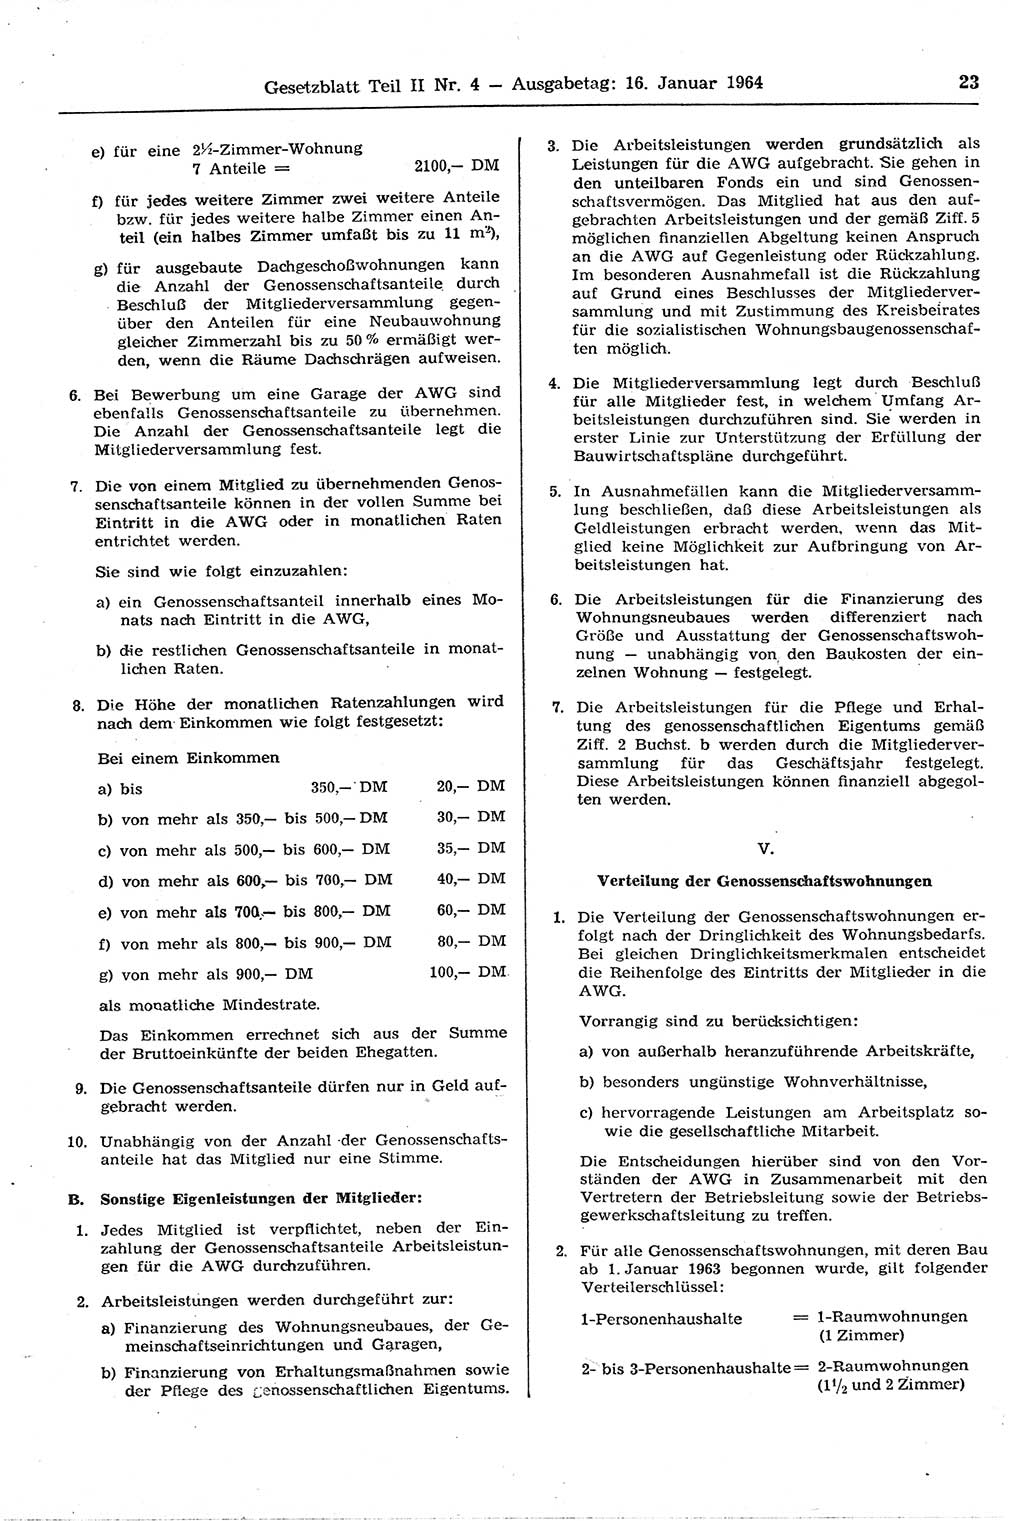 Gesetzblatt (GBl.) der Deutschen Demokratischen Republik (DDR) Teil ⅠⅠ 1964, Seite 23 (GBl. DDR ⅠⅠ 1964, S. 23)